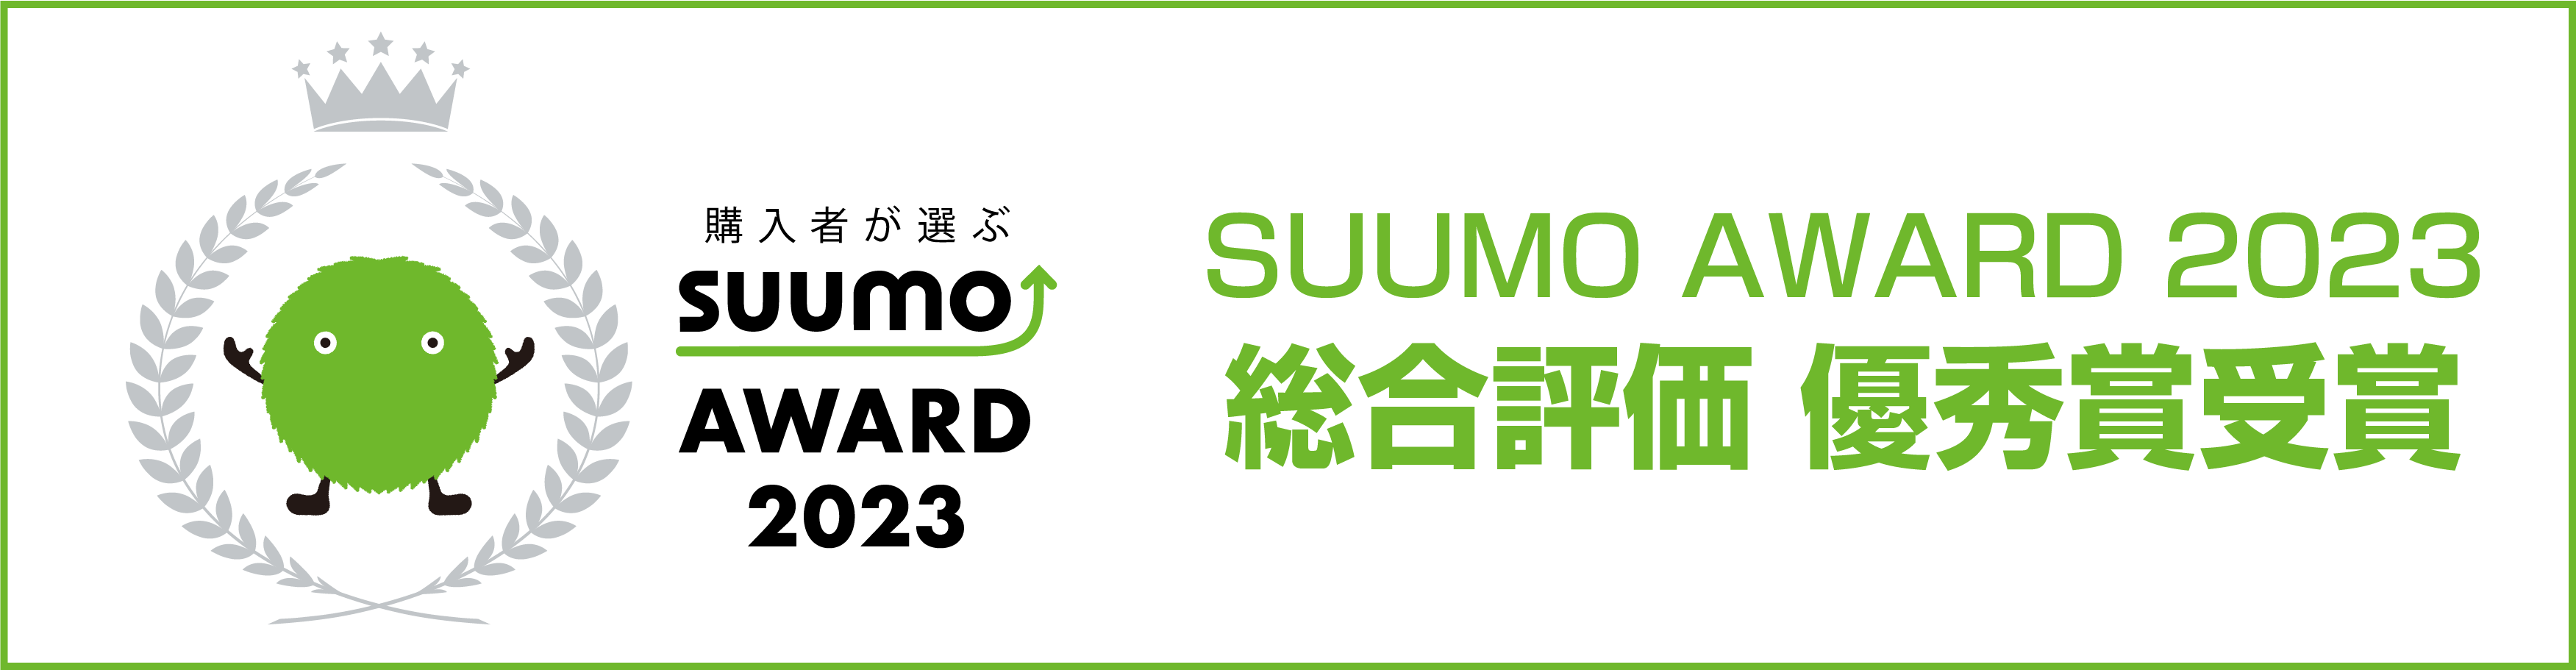 SUMO AWARD 2023 総合評価 優秀賞受賞